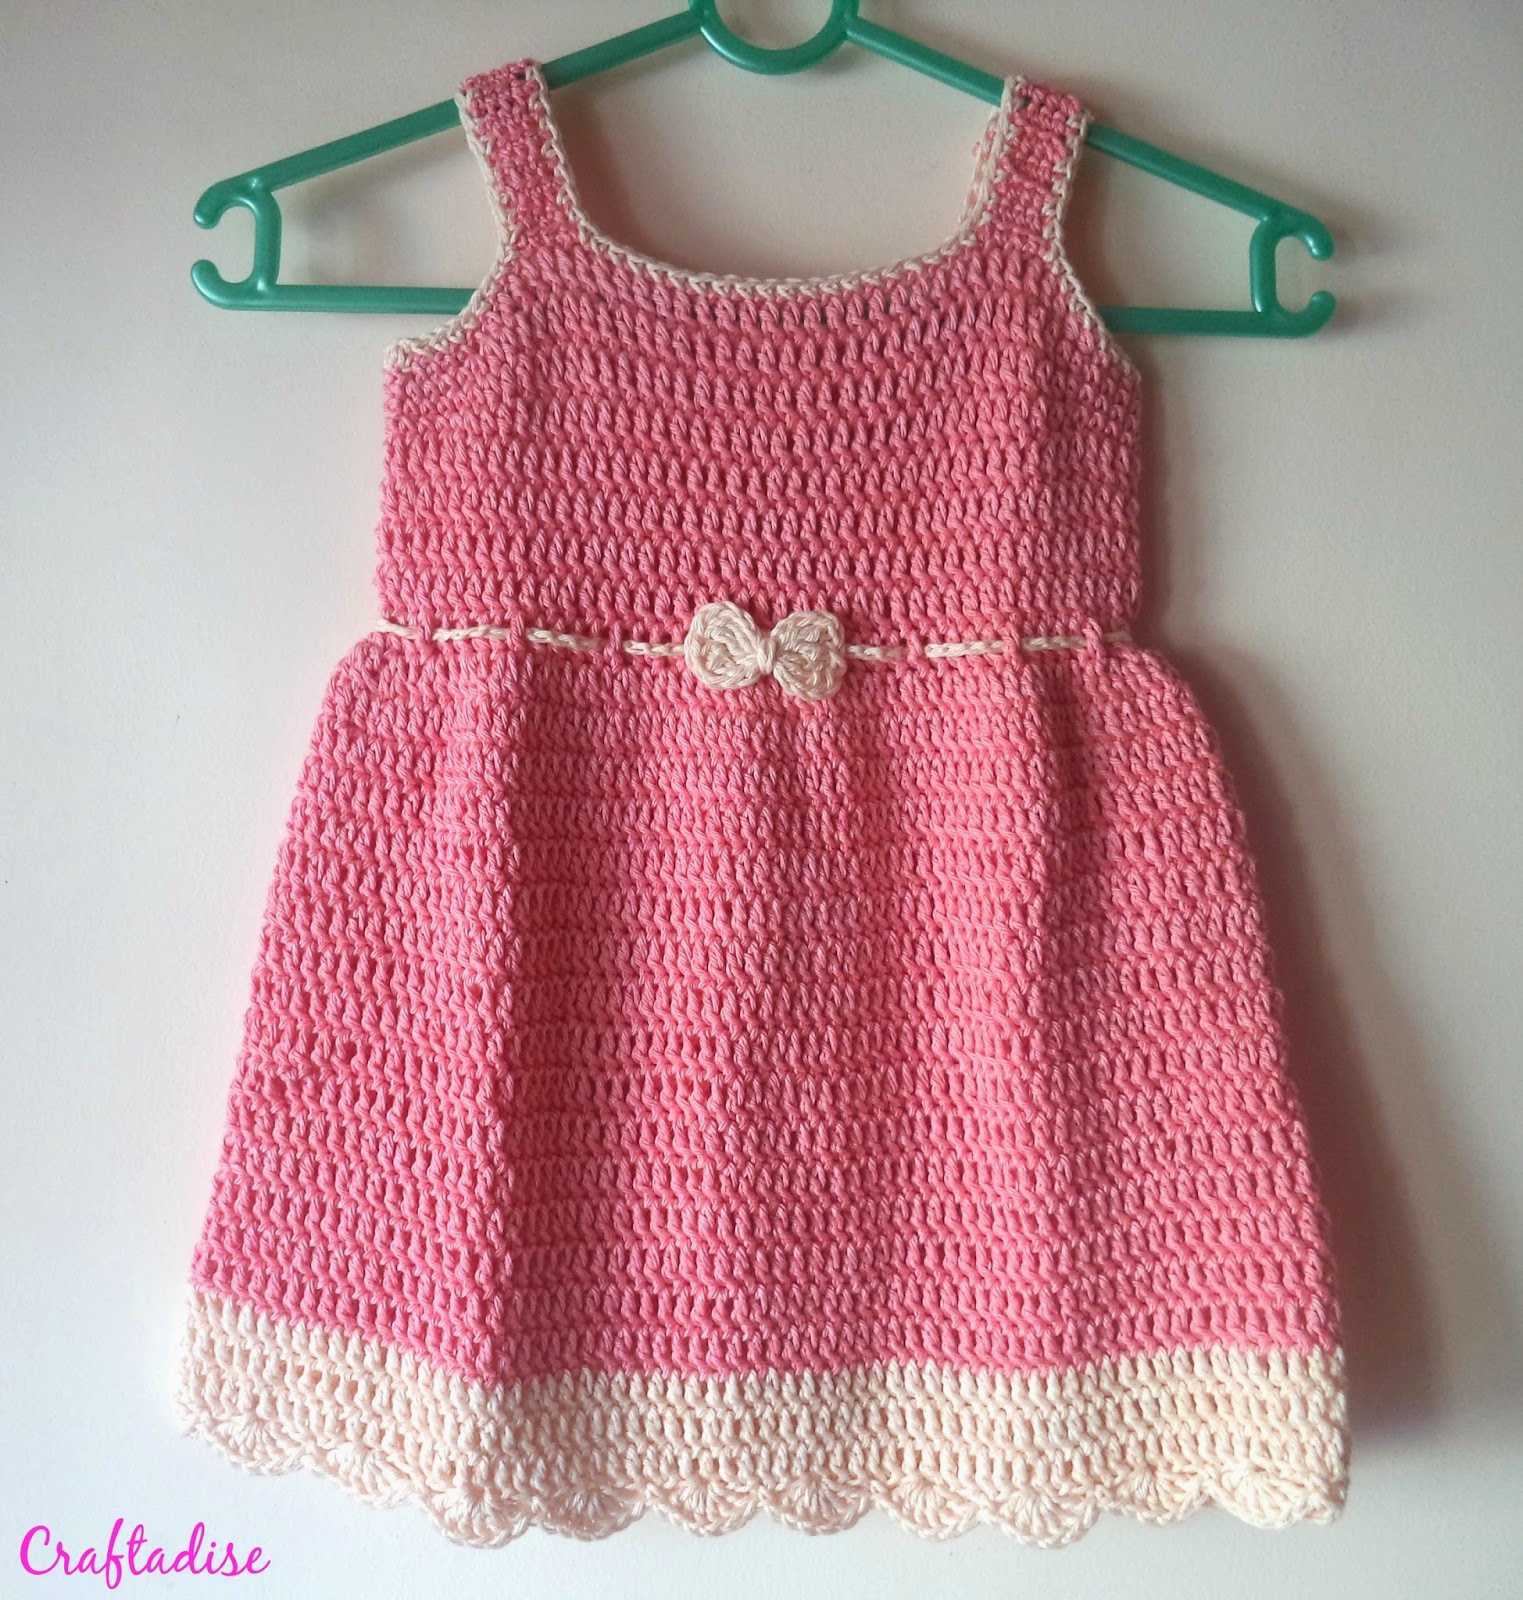 Free Crochet Pattern: Crochet Summer Peach Toddler Dress